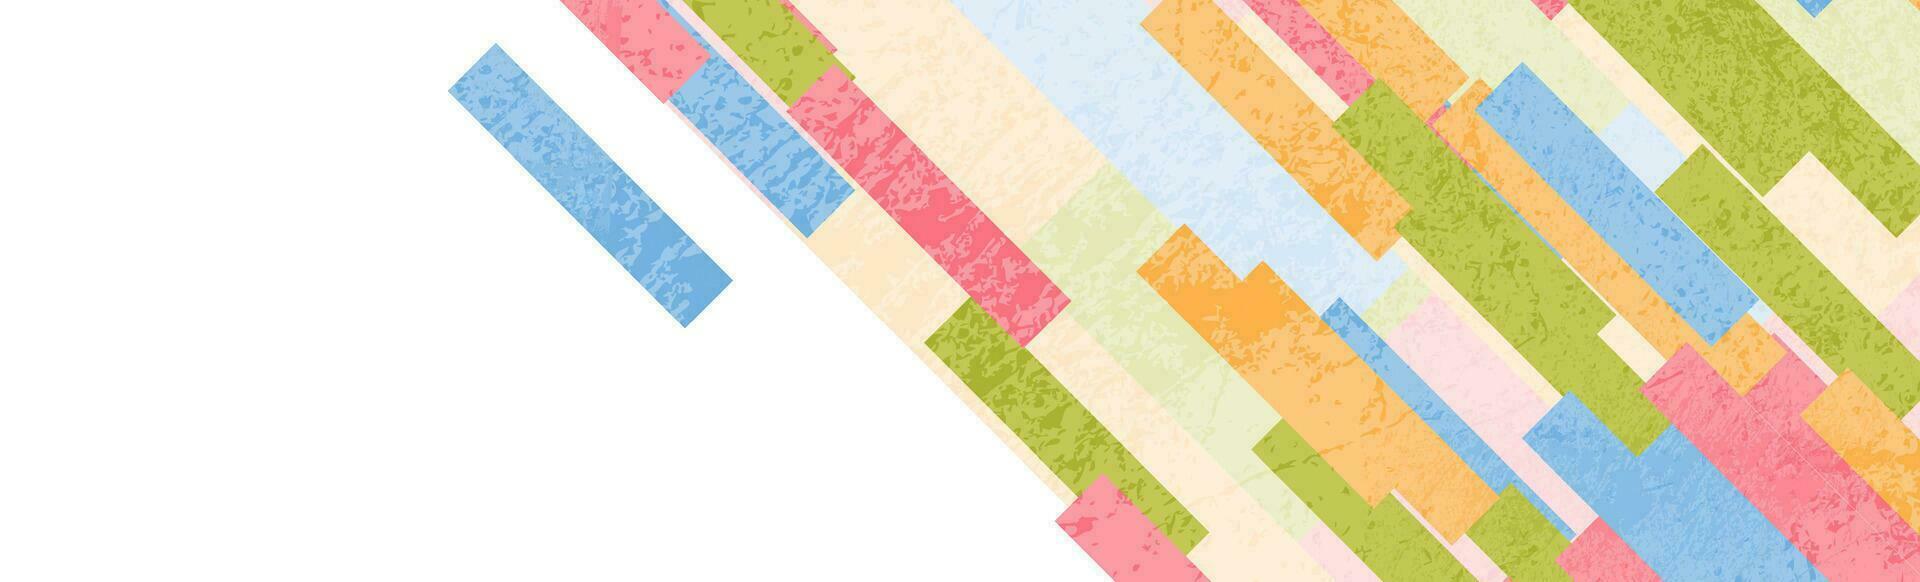 kleurrijk pastel strepen abstract grunge meetkundig achtergrond vector